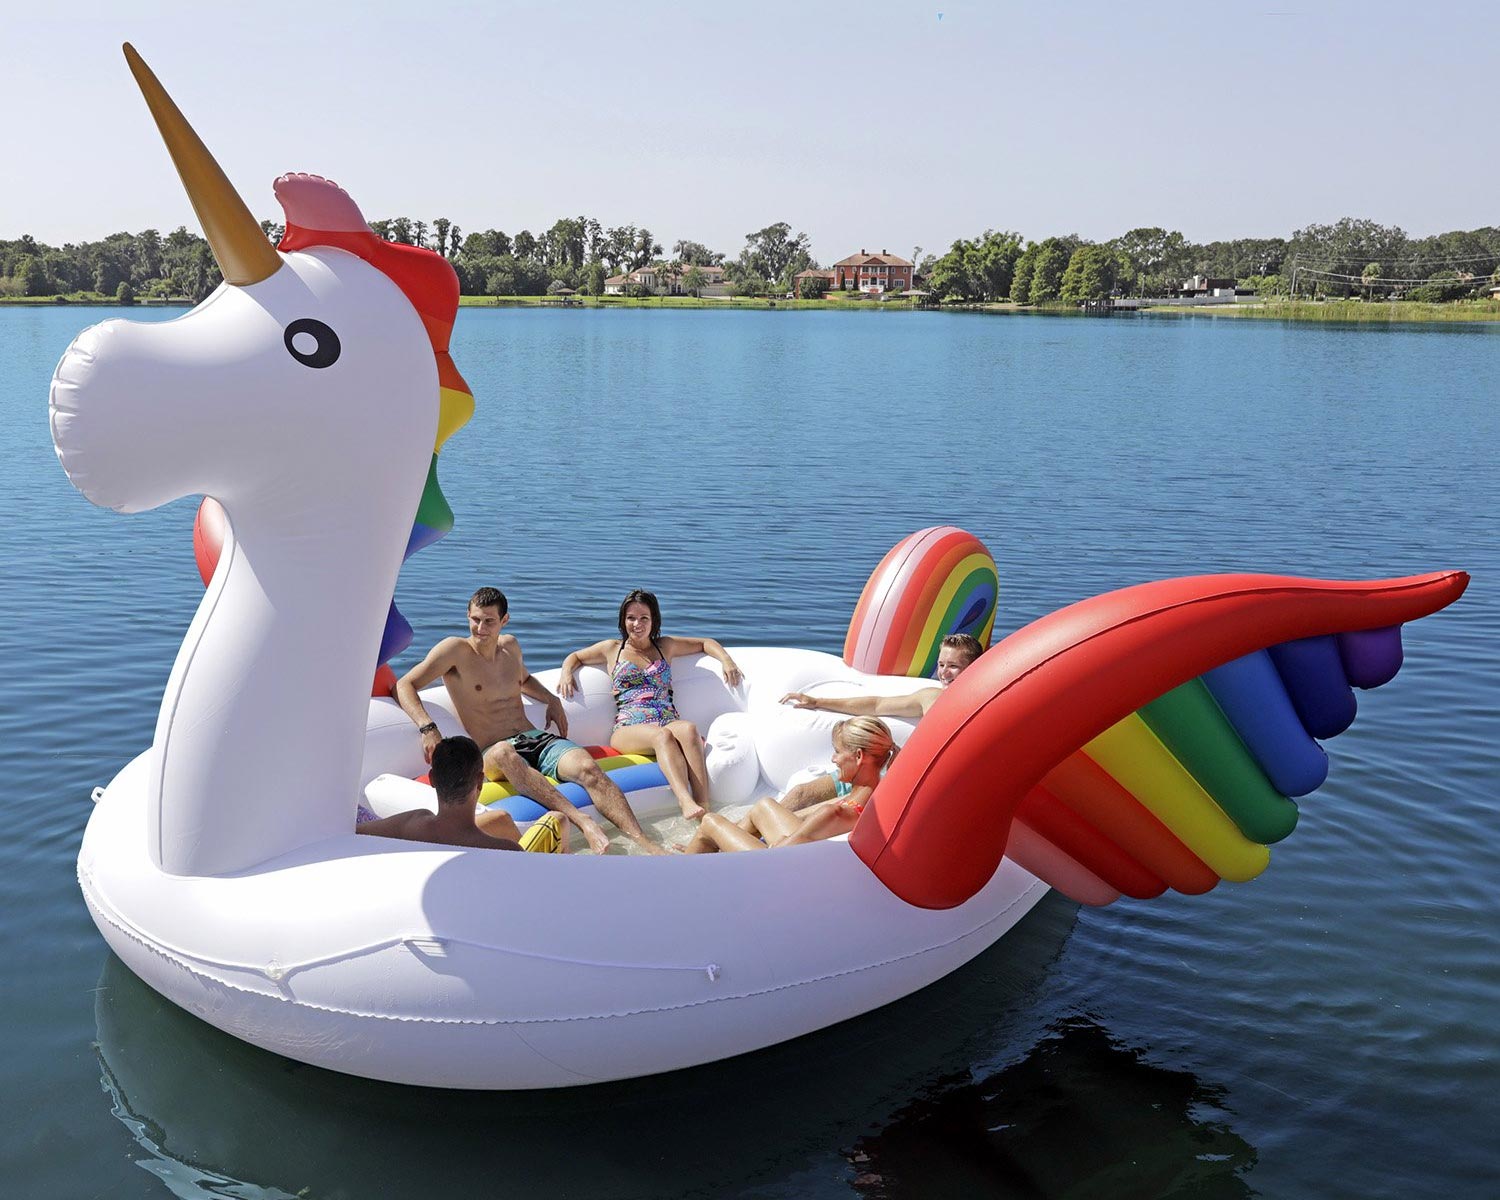 Giant Party Island Unicorn Float